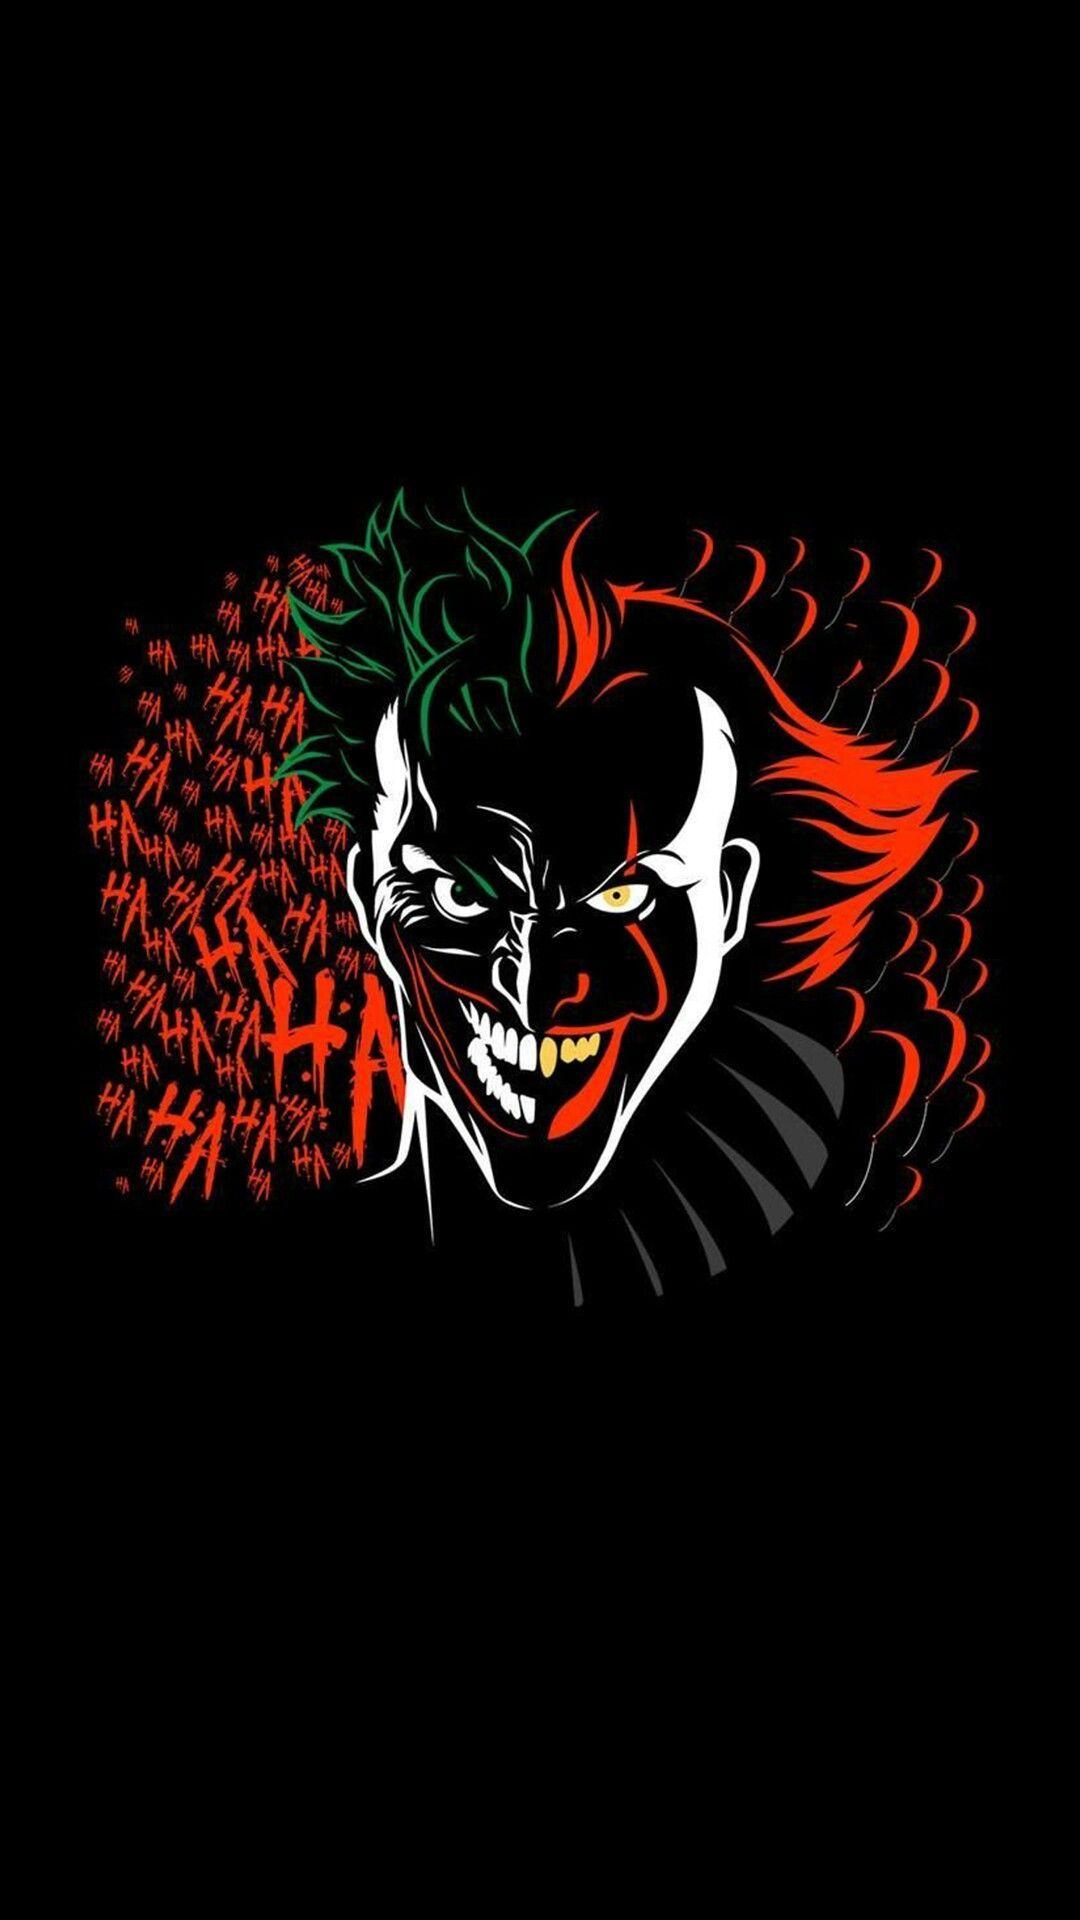 35 Gambar Black Joker Wallpaper Hd Download terbaru 2020